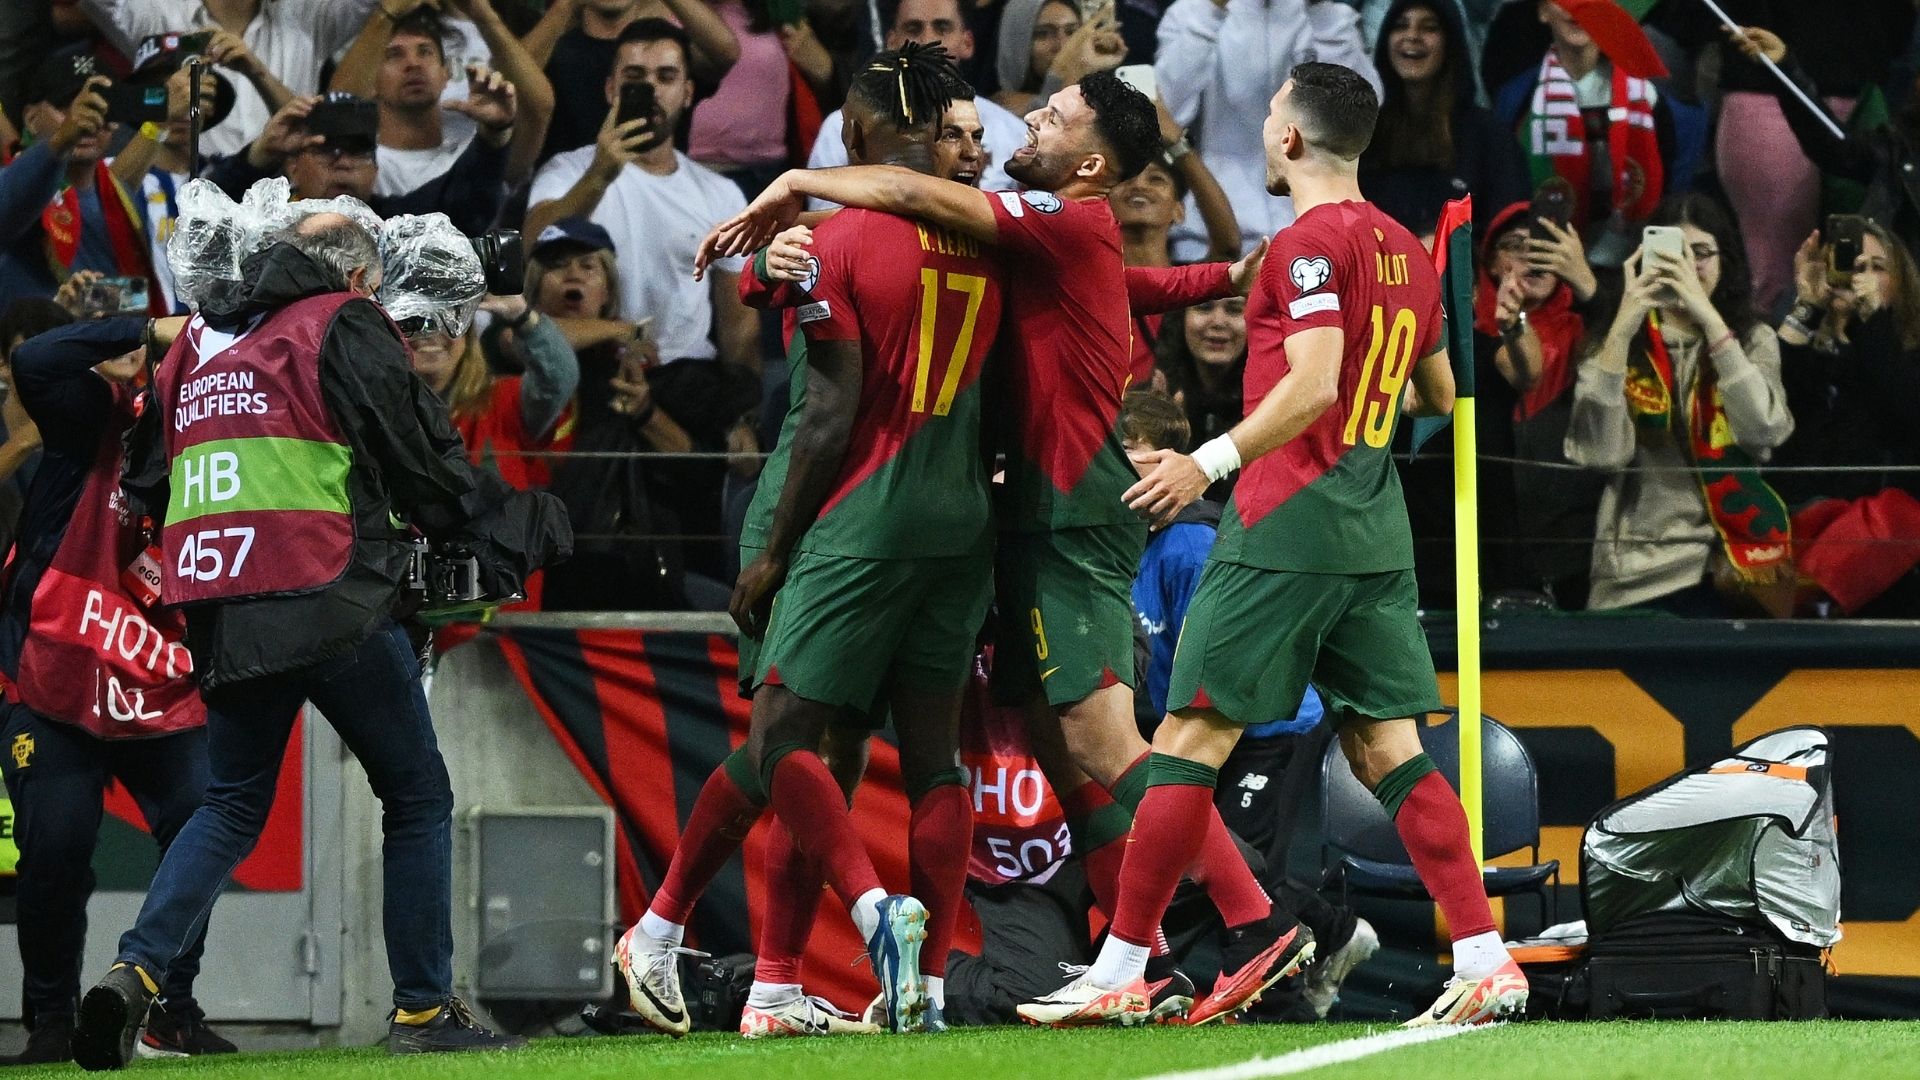 Comemoração de gol da seleção portuguesa (Crédito: Getty Images)